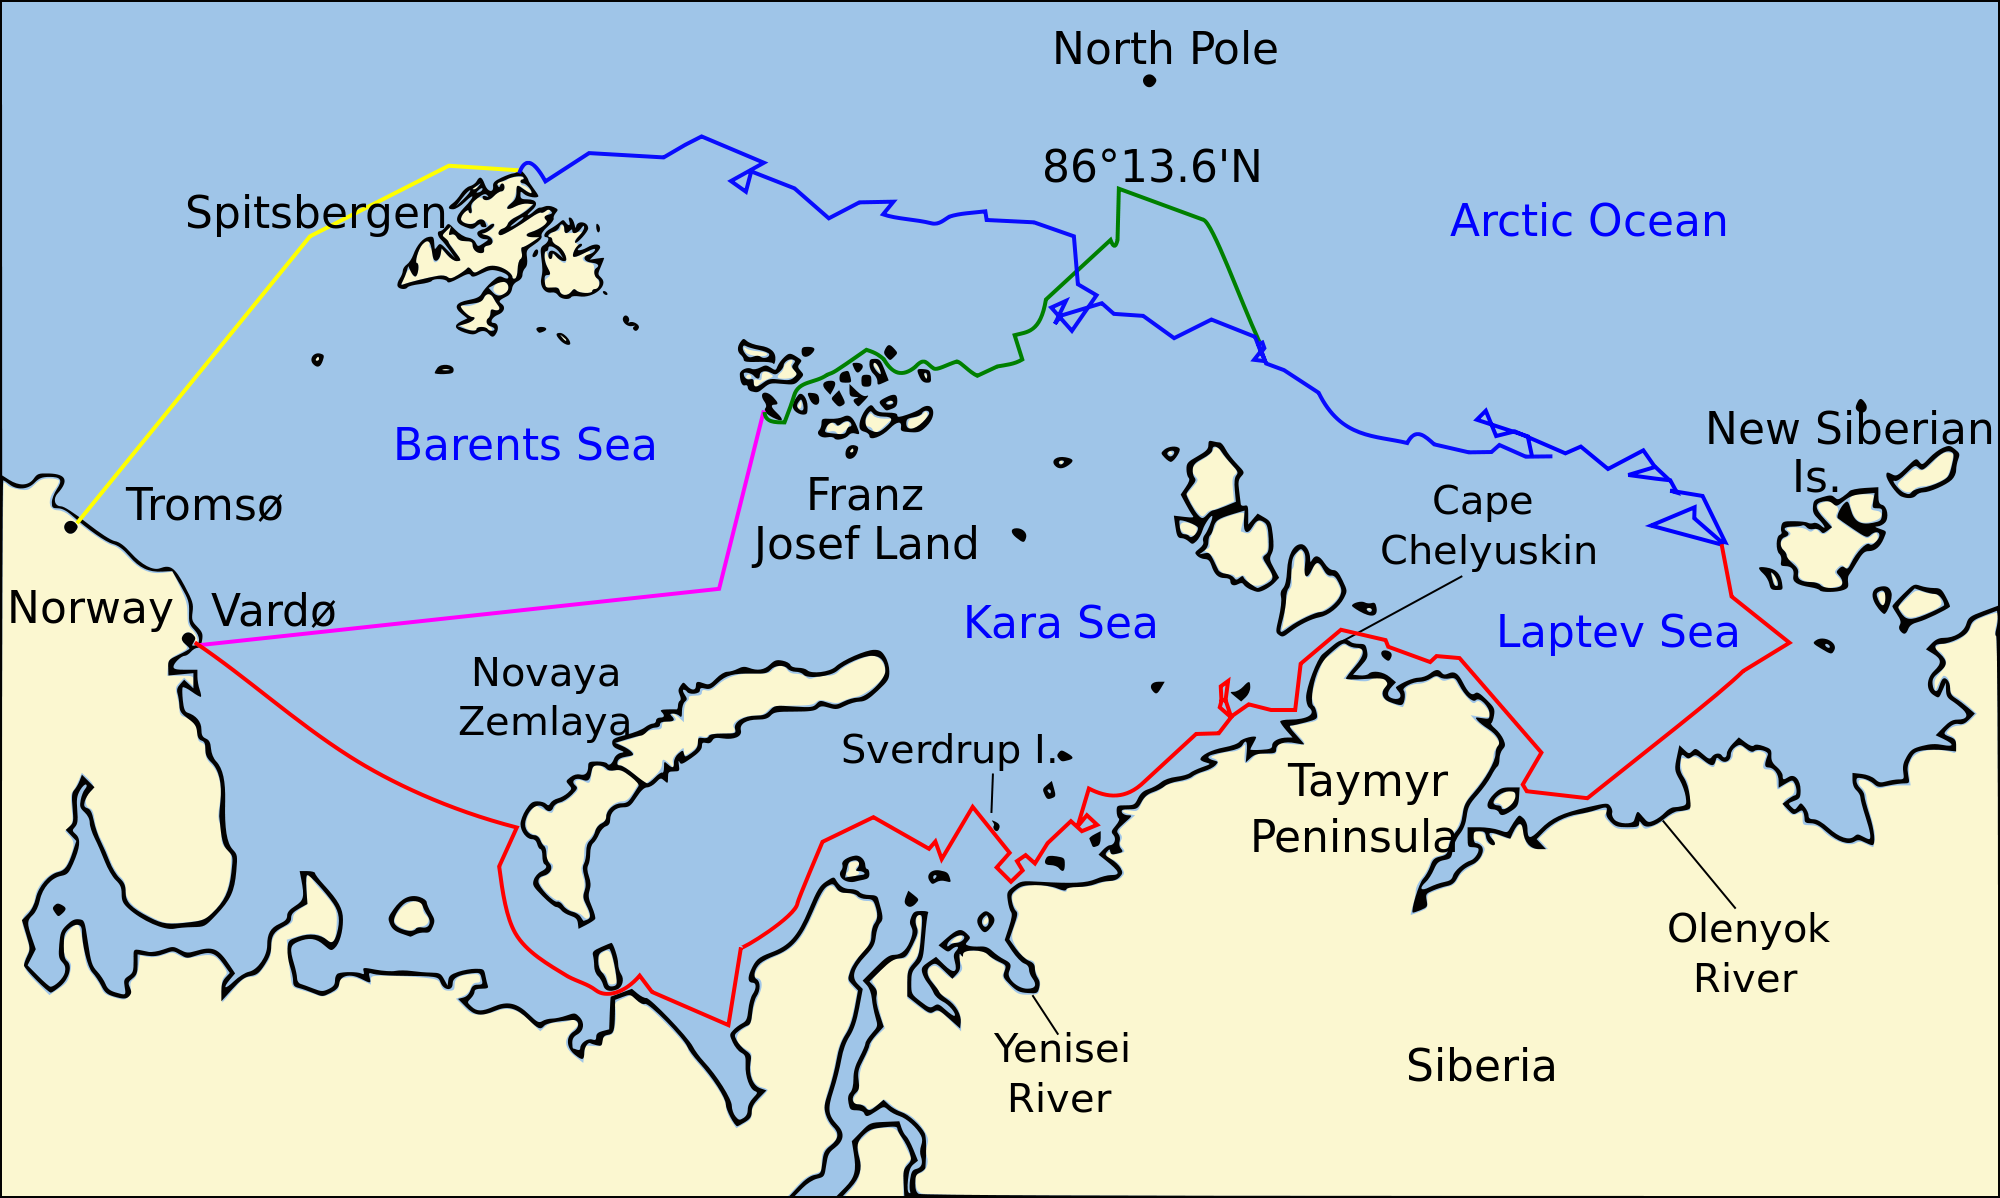 从地理来看,该岛靠近挪威斯维尔巴德群岛,位于北极(北海)航道核心位置